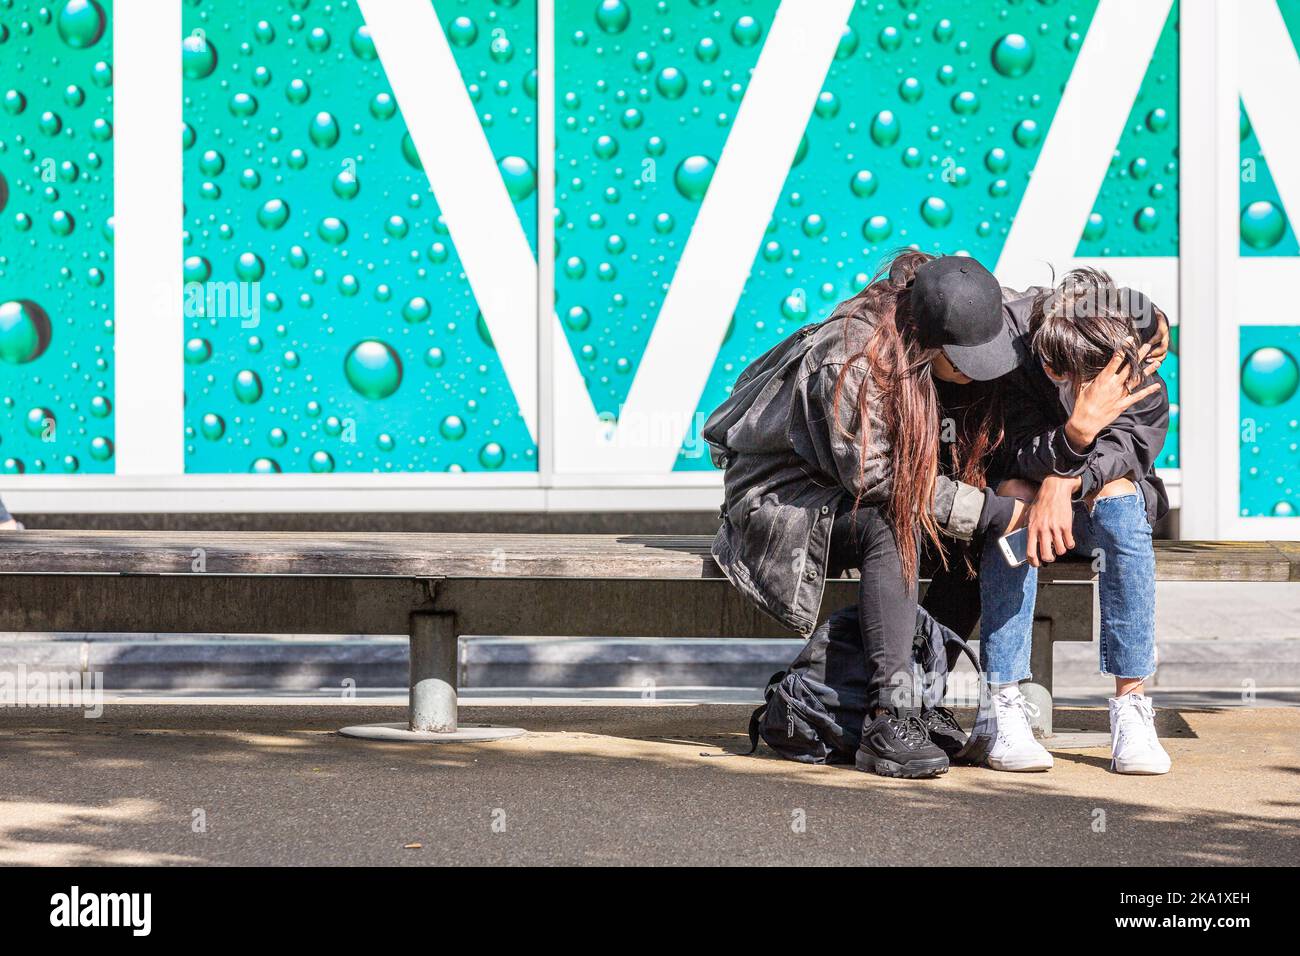 Dolore e conforto: Due figure sedute su una panchina, una afflitta, l'altra consolante la prima. Bruxelles. Foto Stock